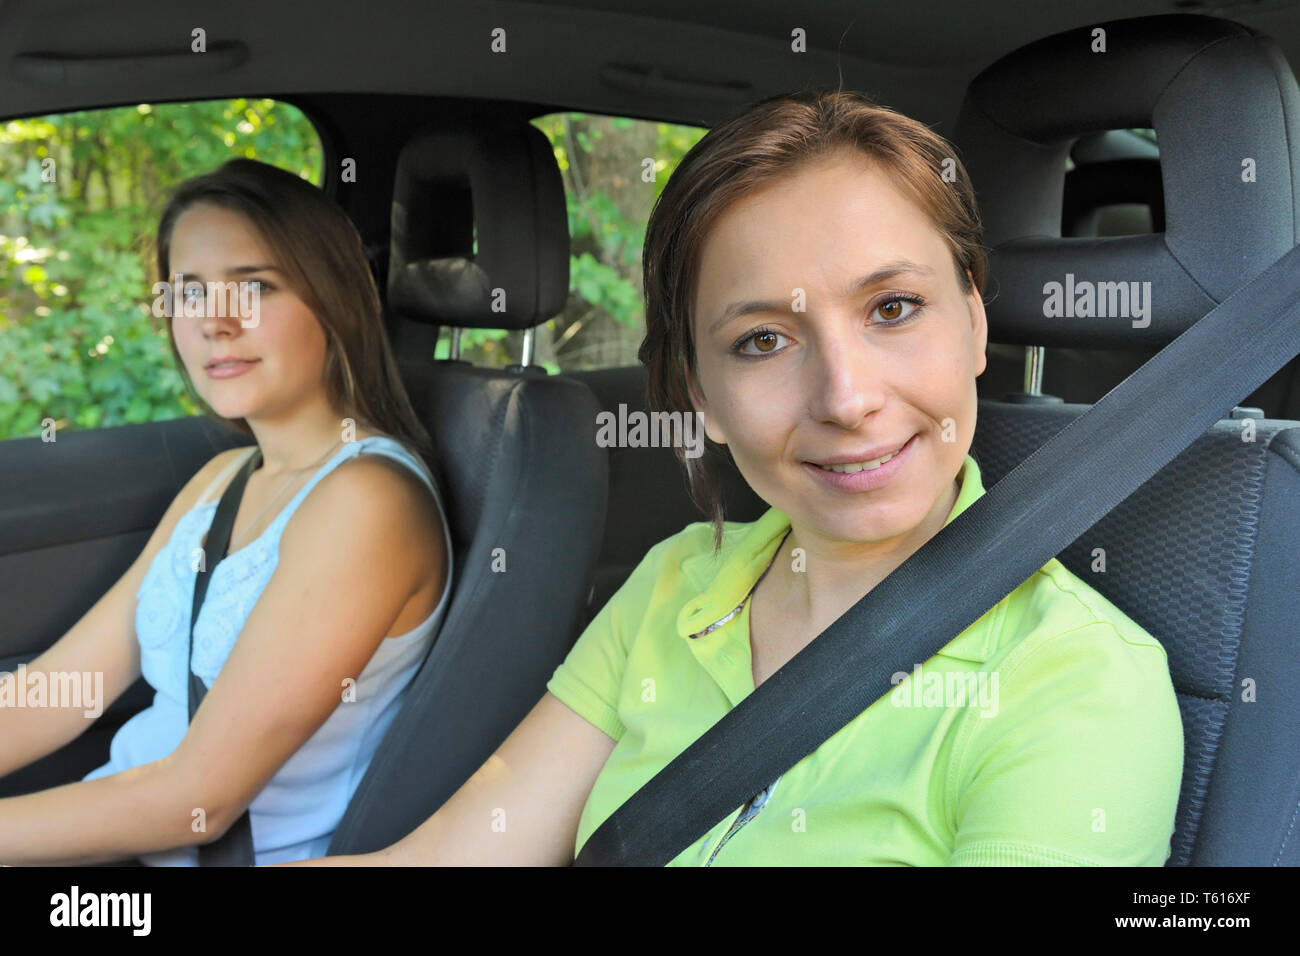 Deux jeunes femmes assise dans une voiture ceinture bouclée Banque D'Images